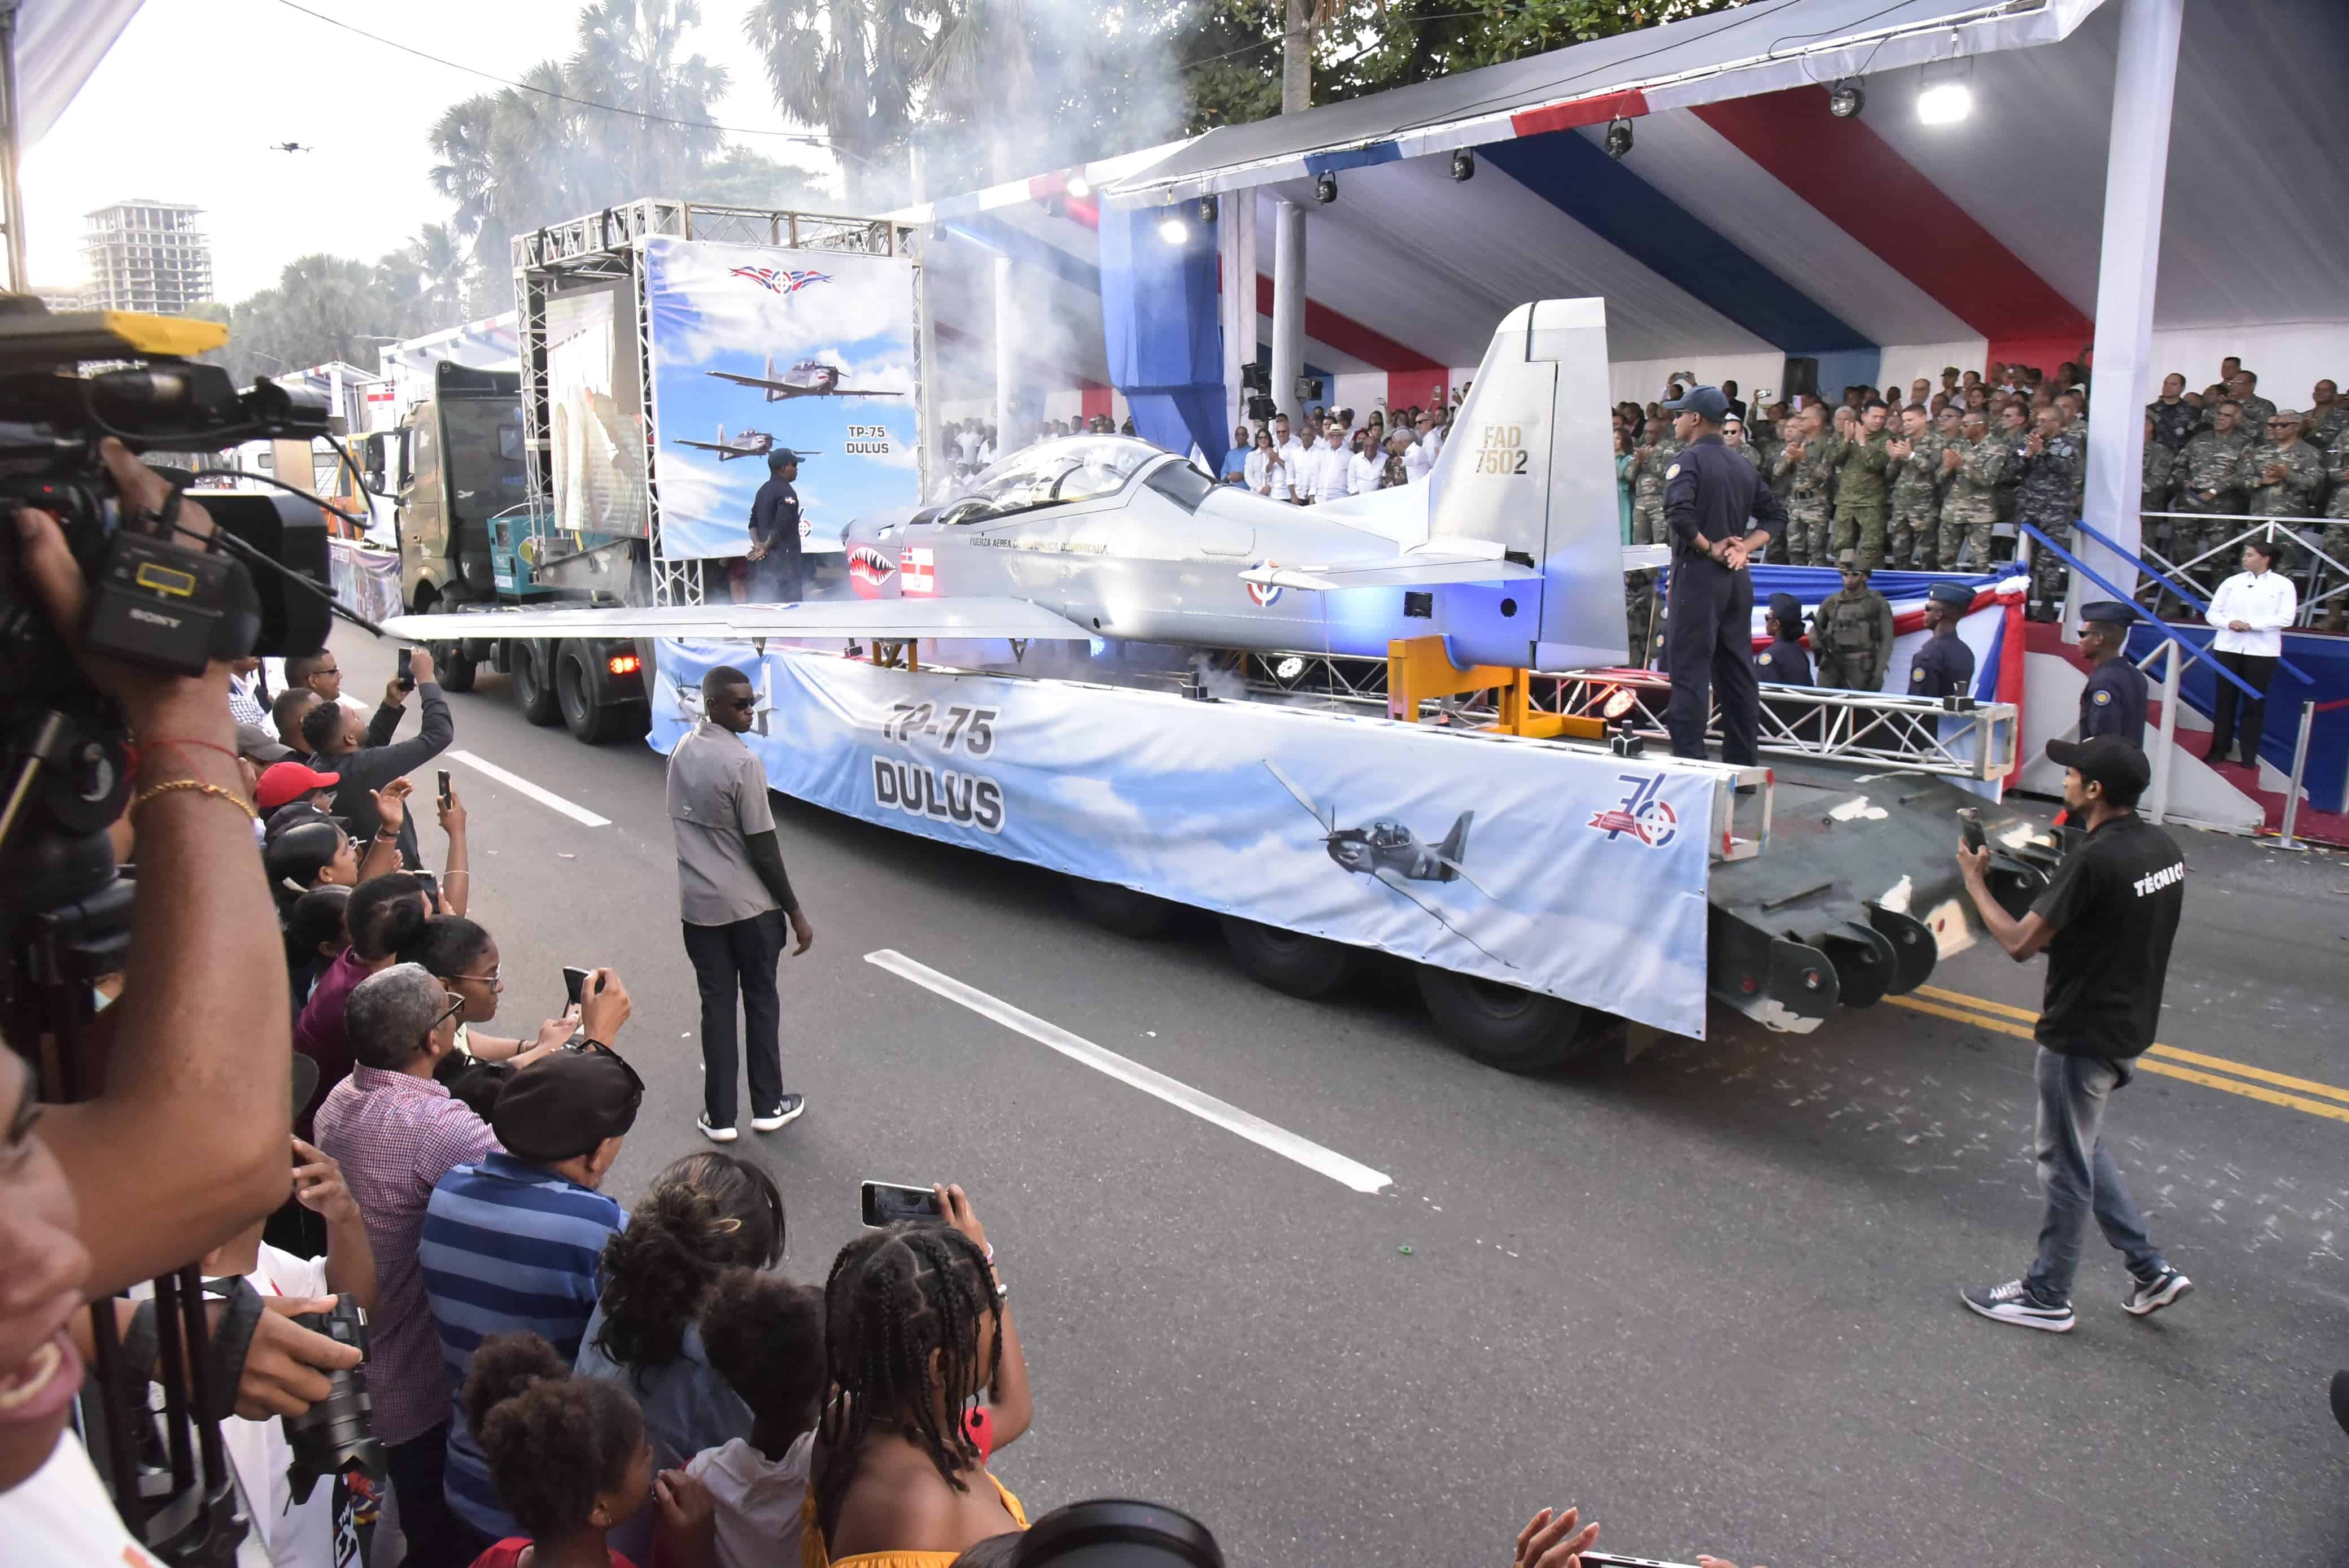 La aeronave TP-75 Dulus, ensamblada en la Fuerza Aérea de la República pasa frente al palco presidencial.